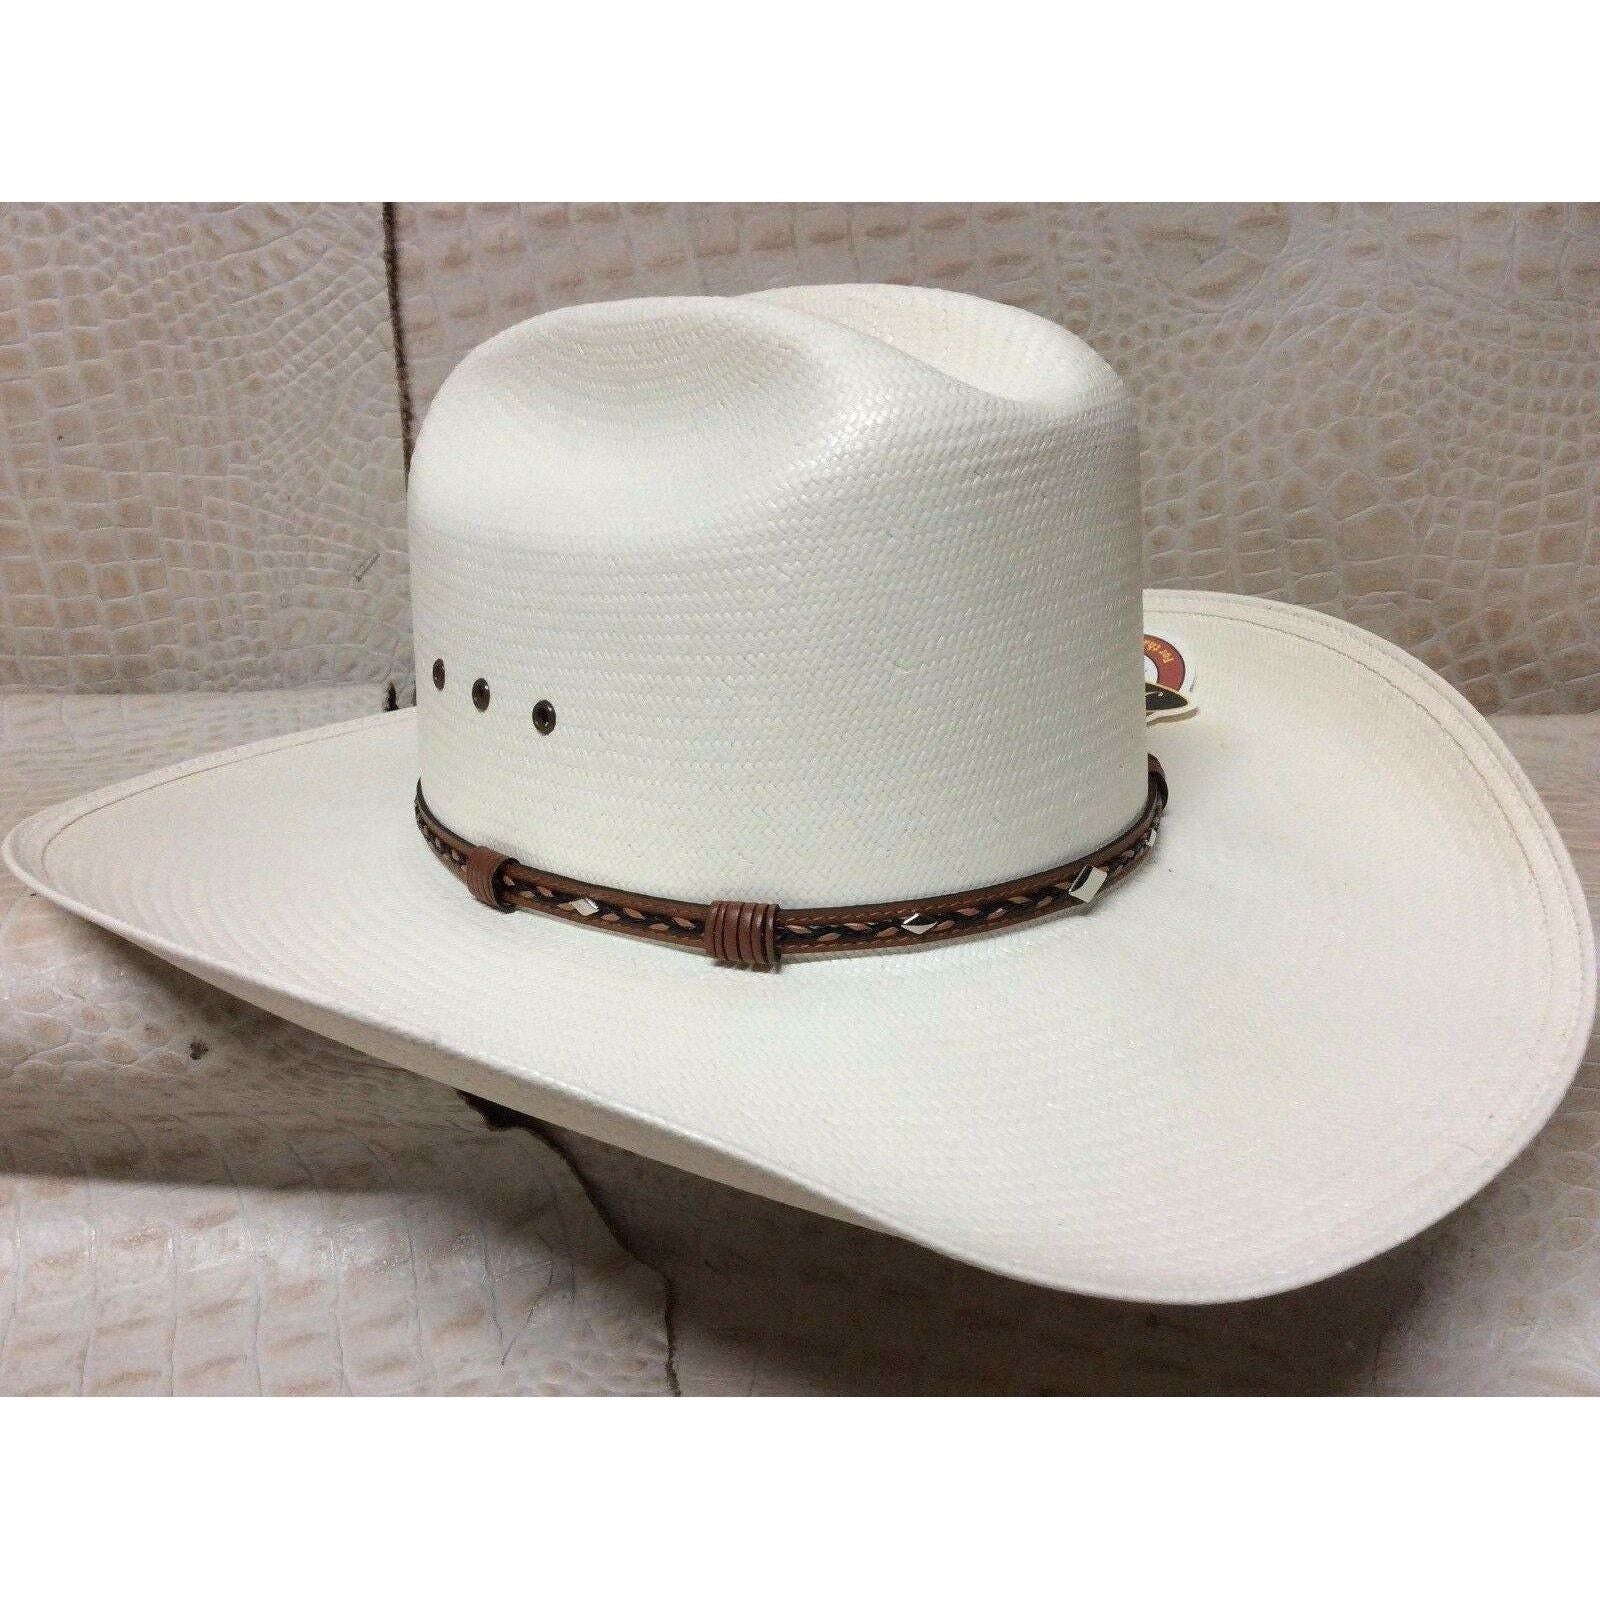 Stetson 8x Ocala Western Classic Cowboy Straw Hat 4 Inch Brim - CWesternwear